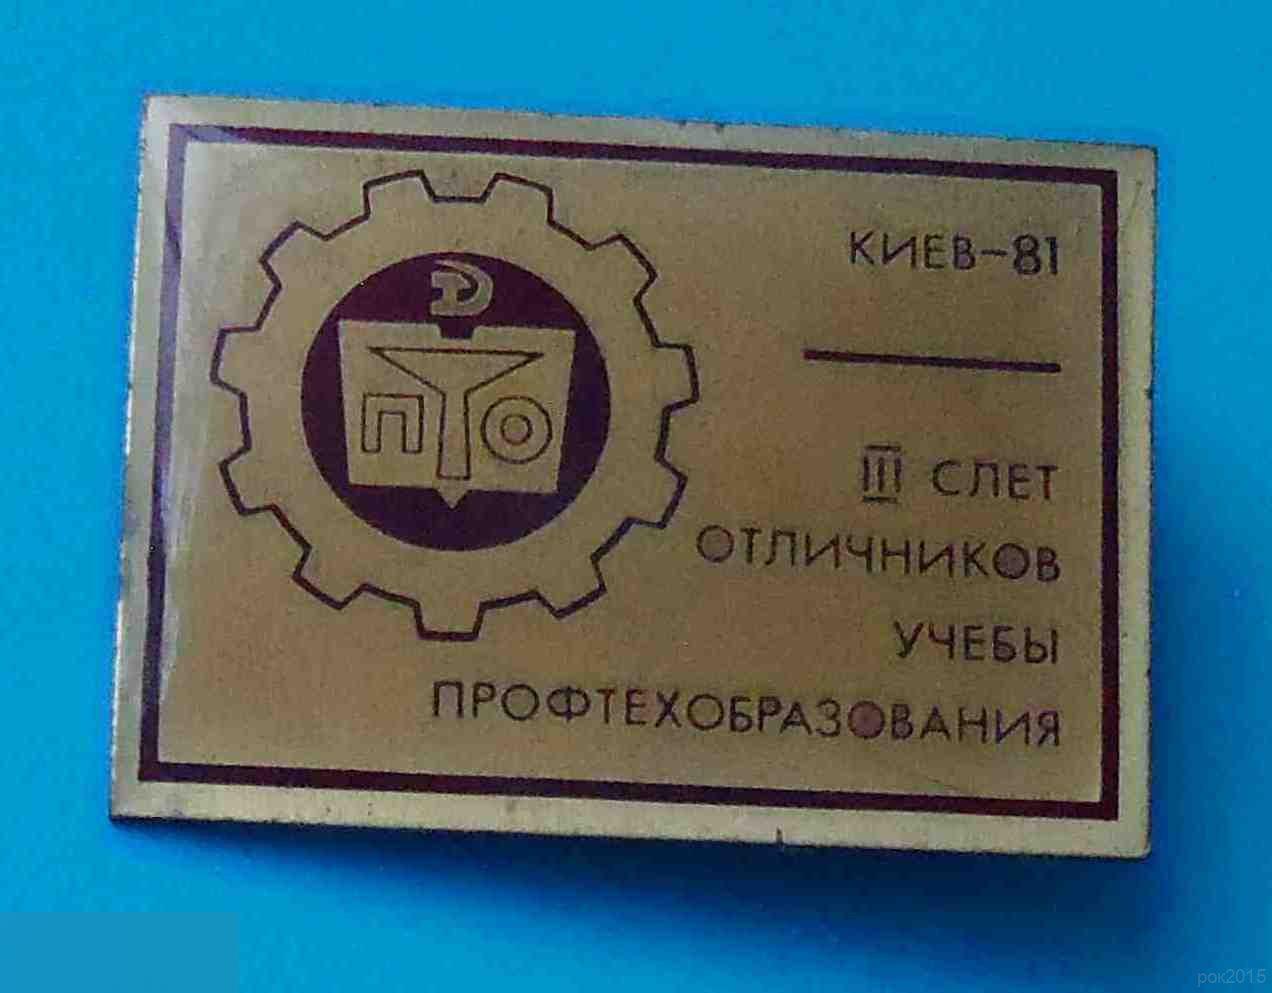 3 слет отличников учебы профтехобразования Киев 1981 ПТО